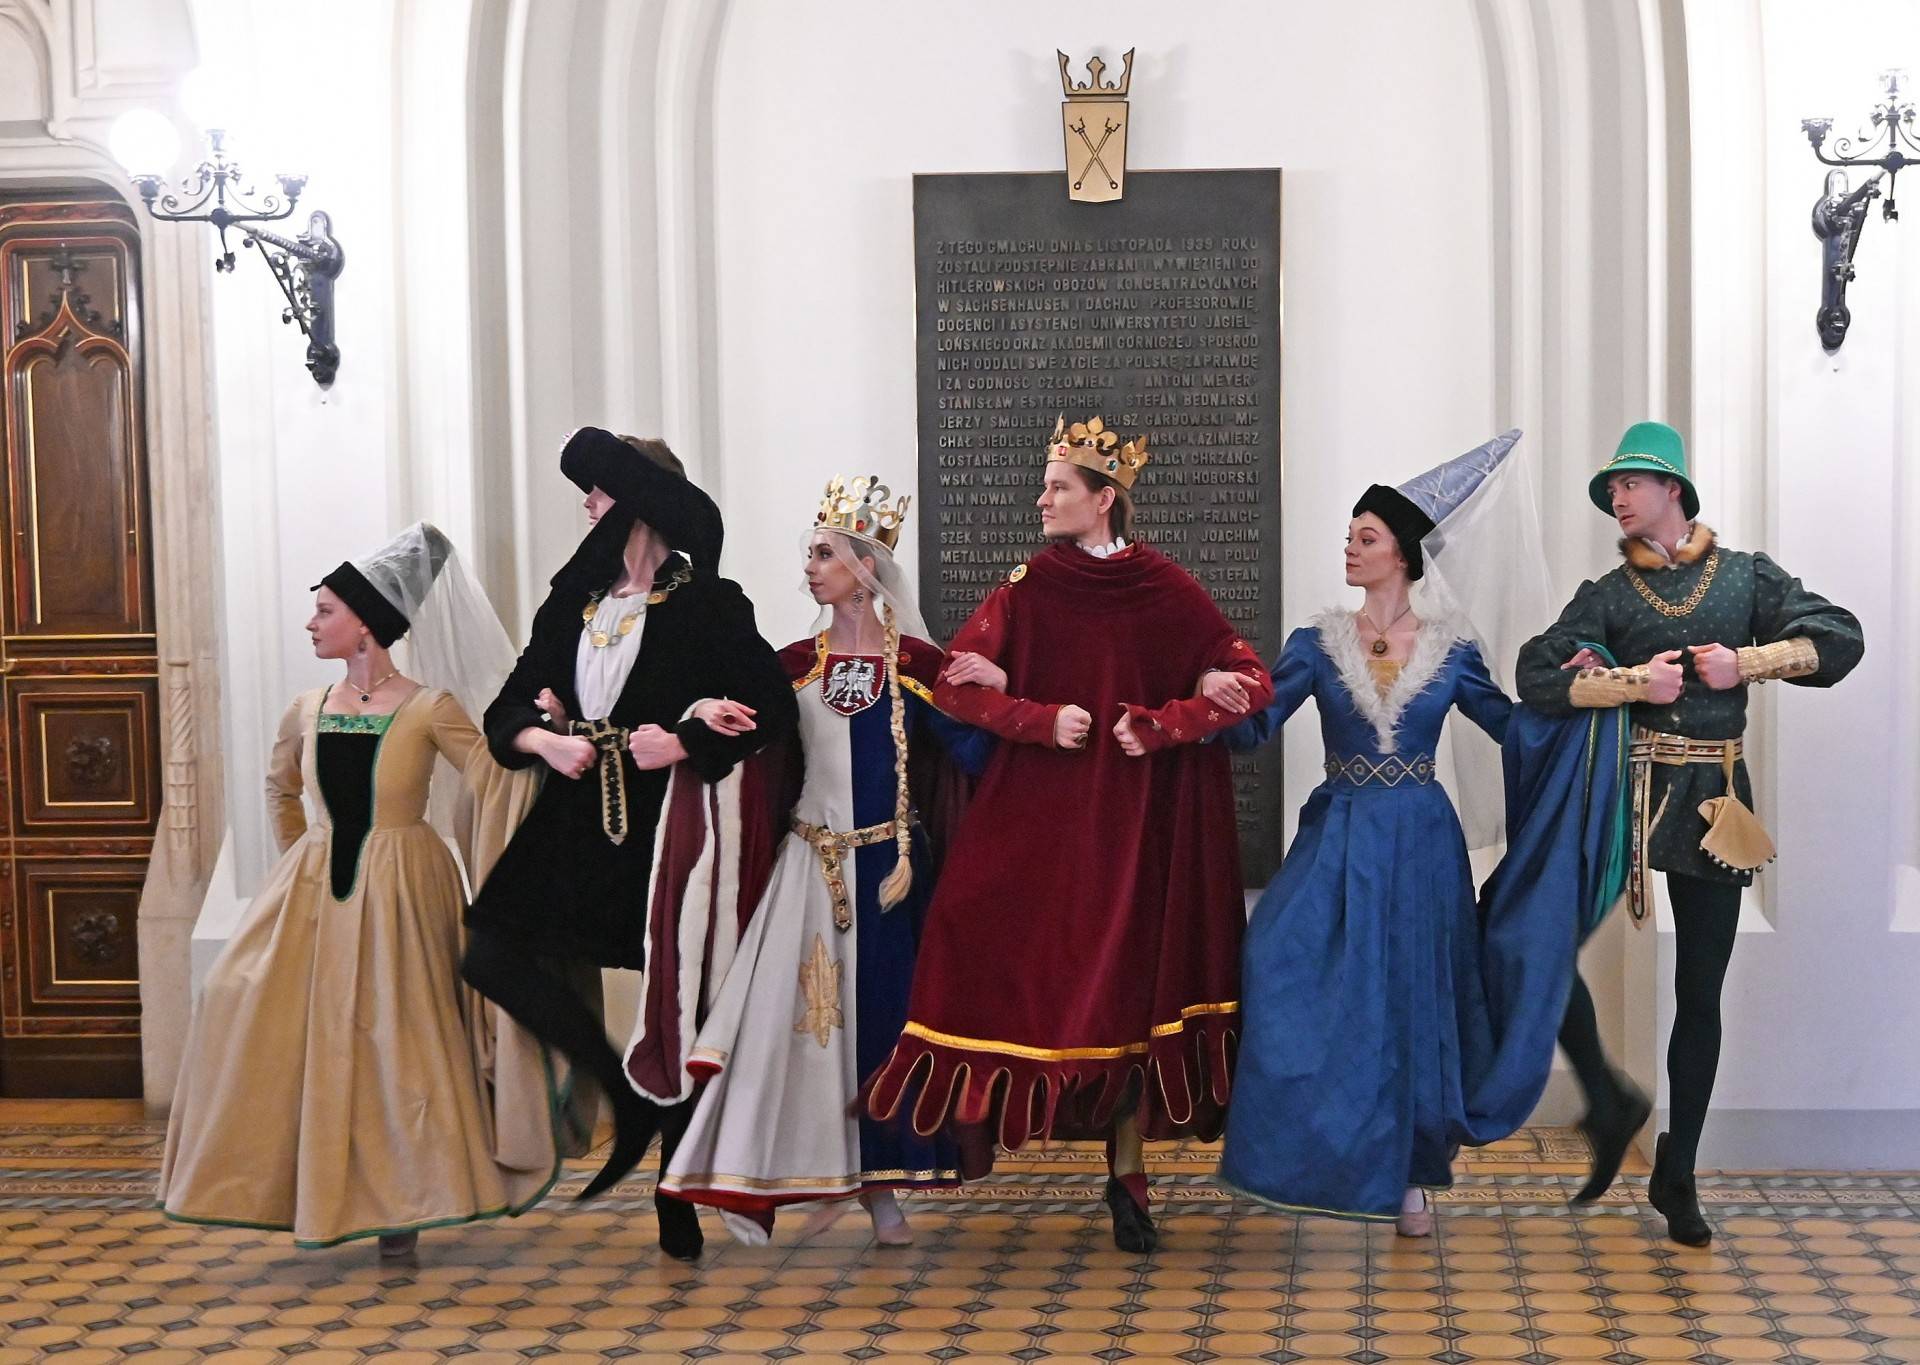 Piękny, taneczny pokaz w Collegium Novum. Królowa Jadwiga, król Jagiełło...